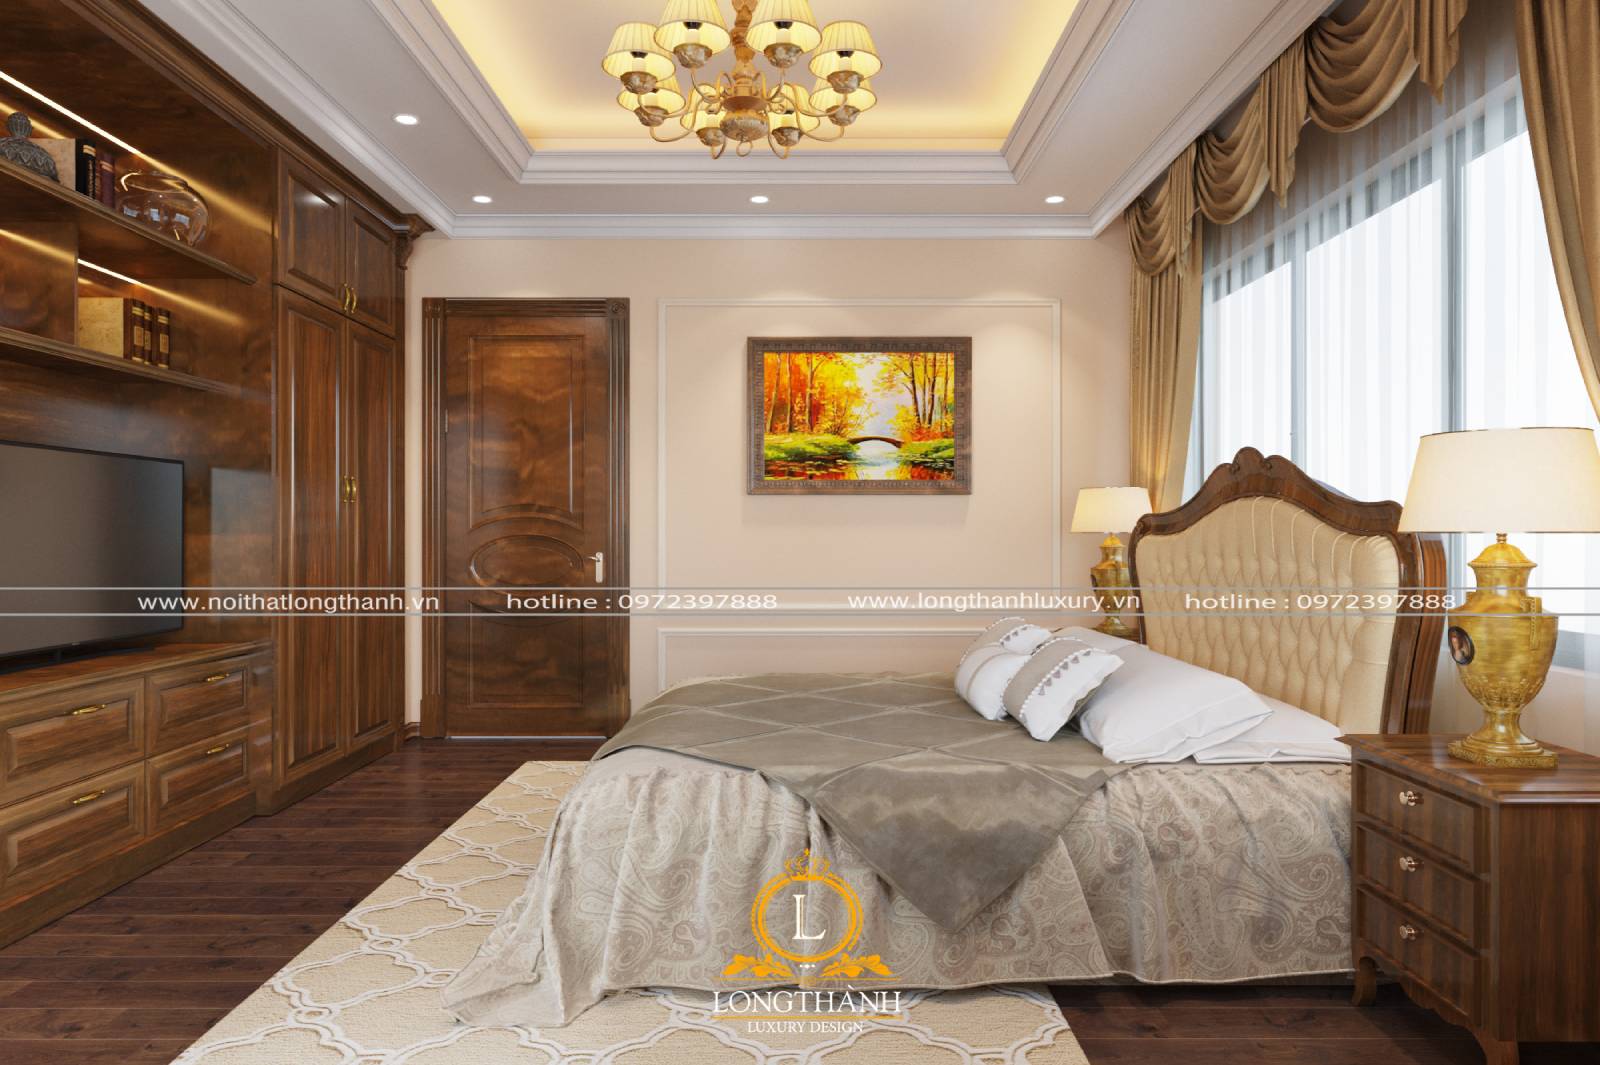 Thiết kế giường ngủ cao cấp cho phòng ngủ nhà chung cư